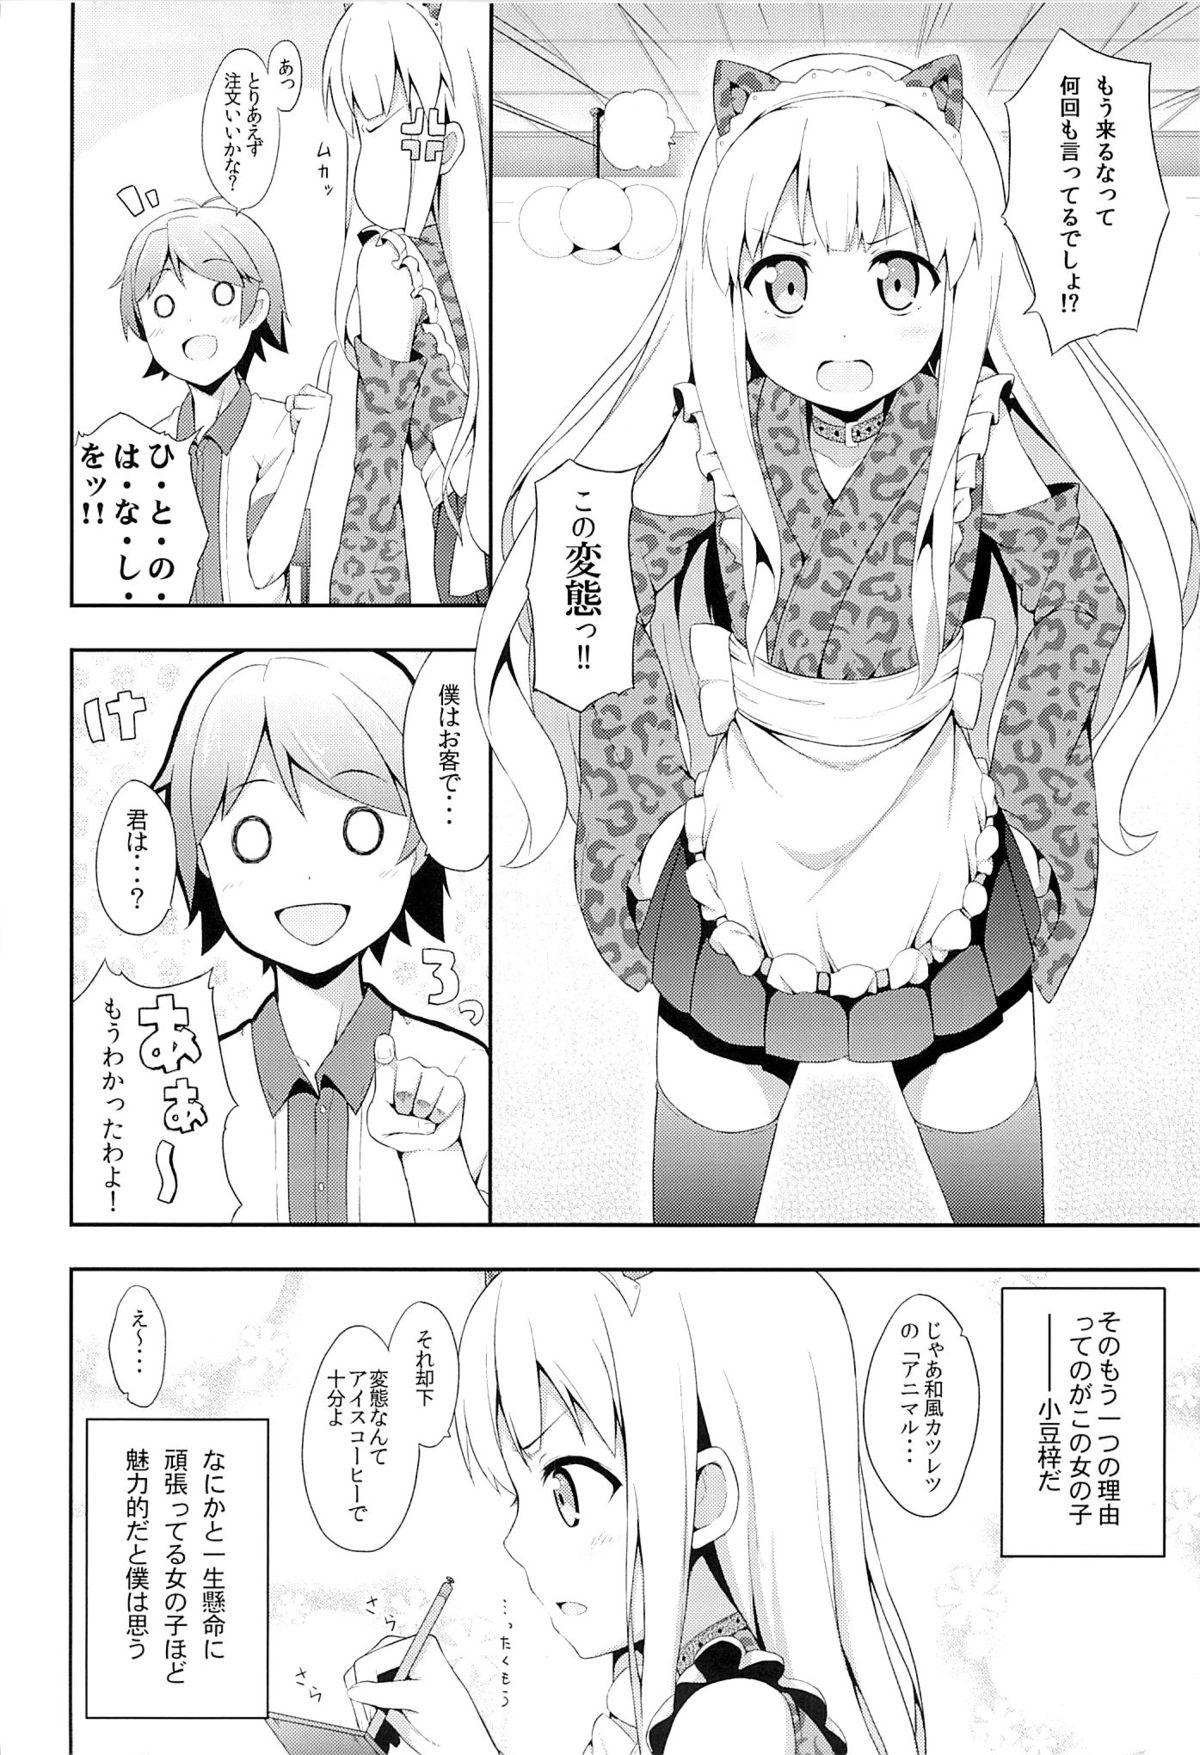 Bhabi Hentai Ouji ni Manabu xxx no Kyoukun. 2 - Hentai ouji to warawanai neko Nurse - Page 3